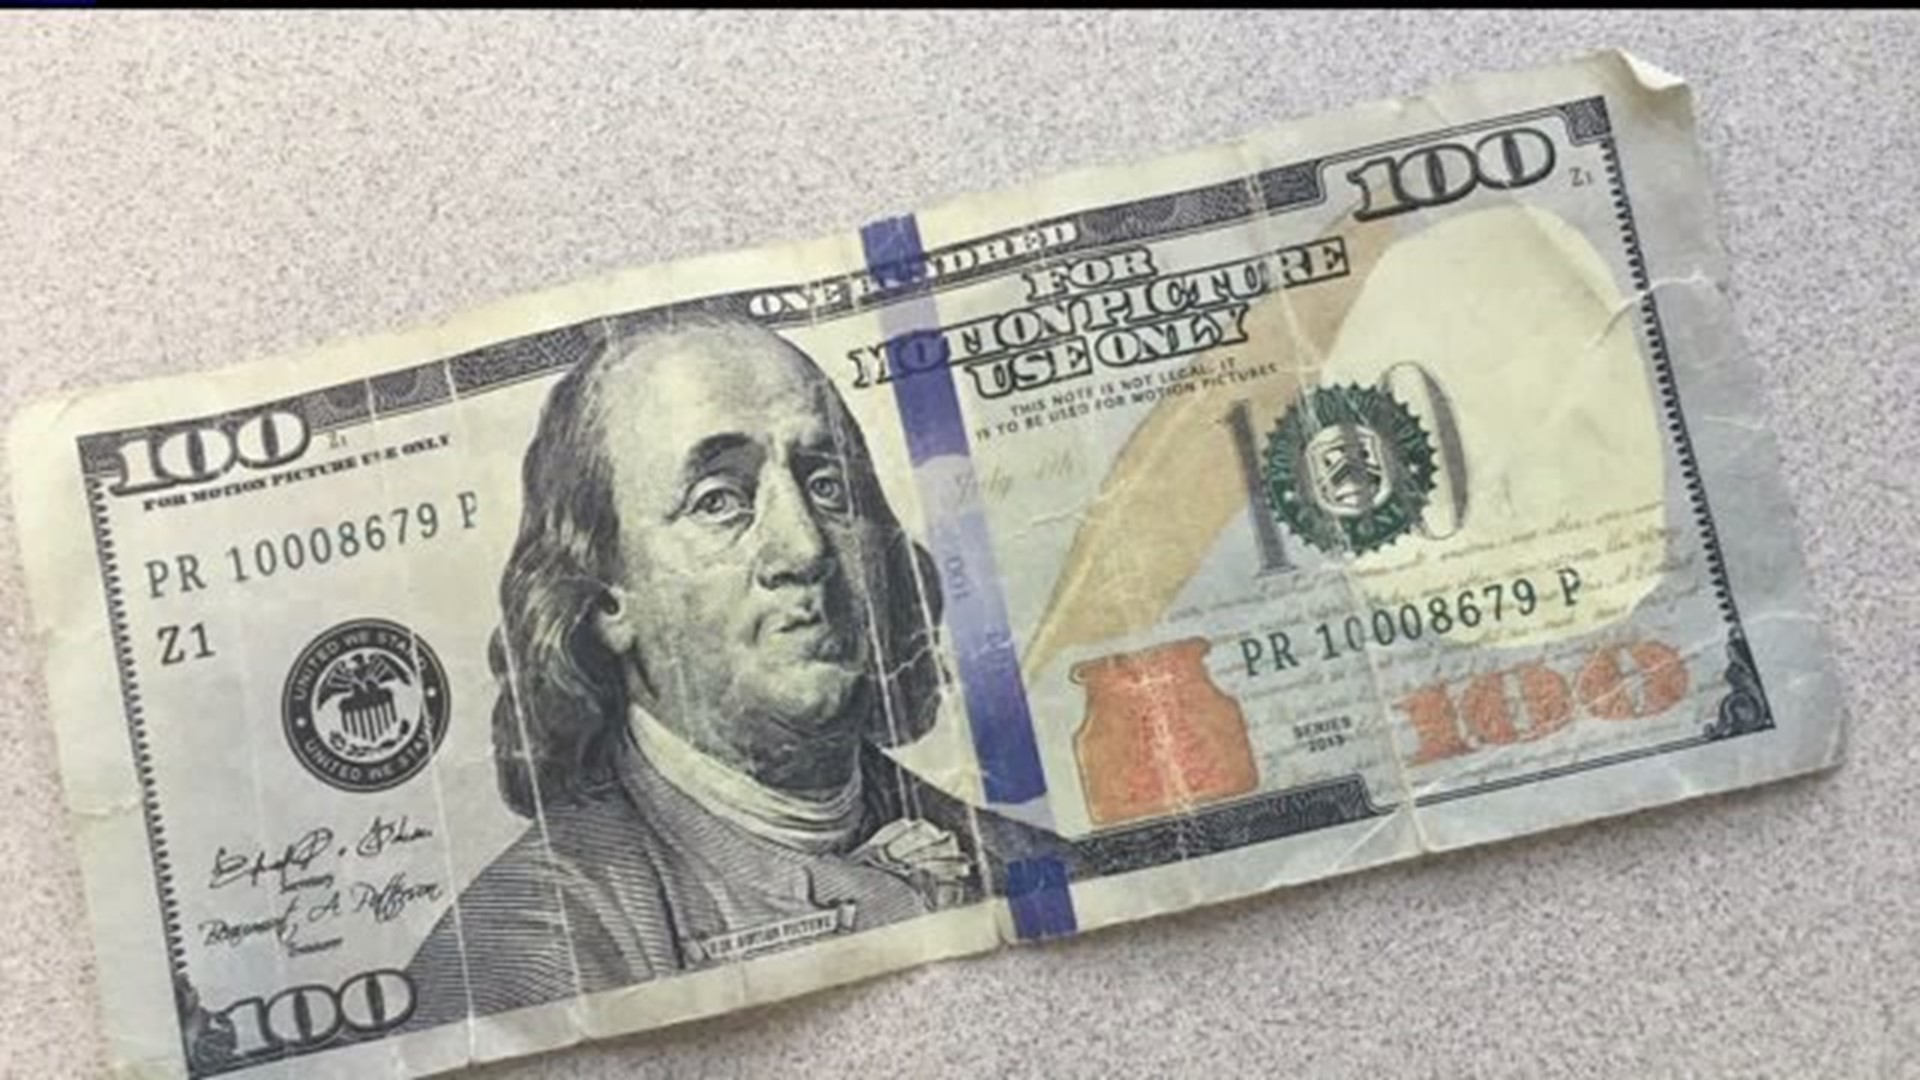 Fake bills showing up in Iowa